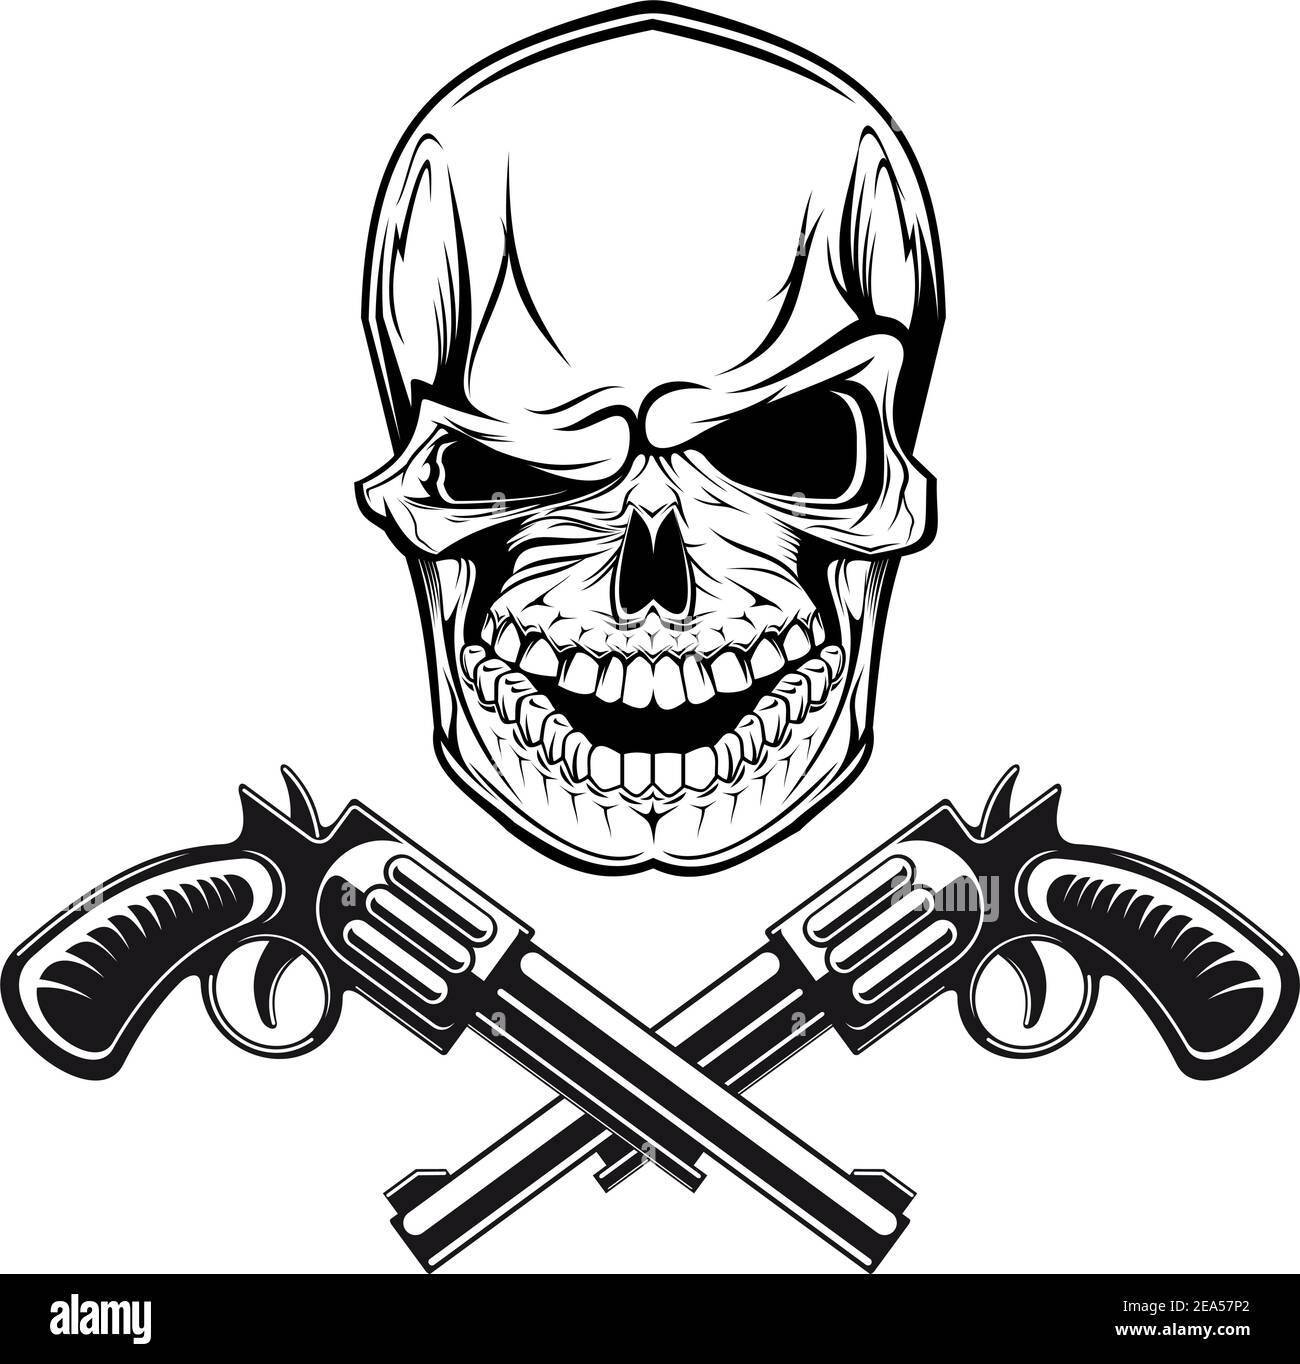 Crâne souriant avec revolvers pour un motif tatouage Illustration de Vecteur